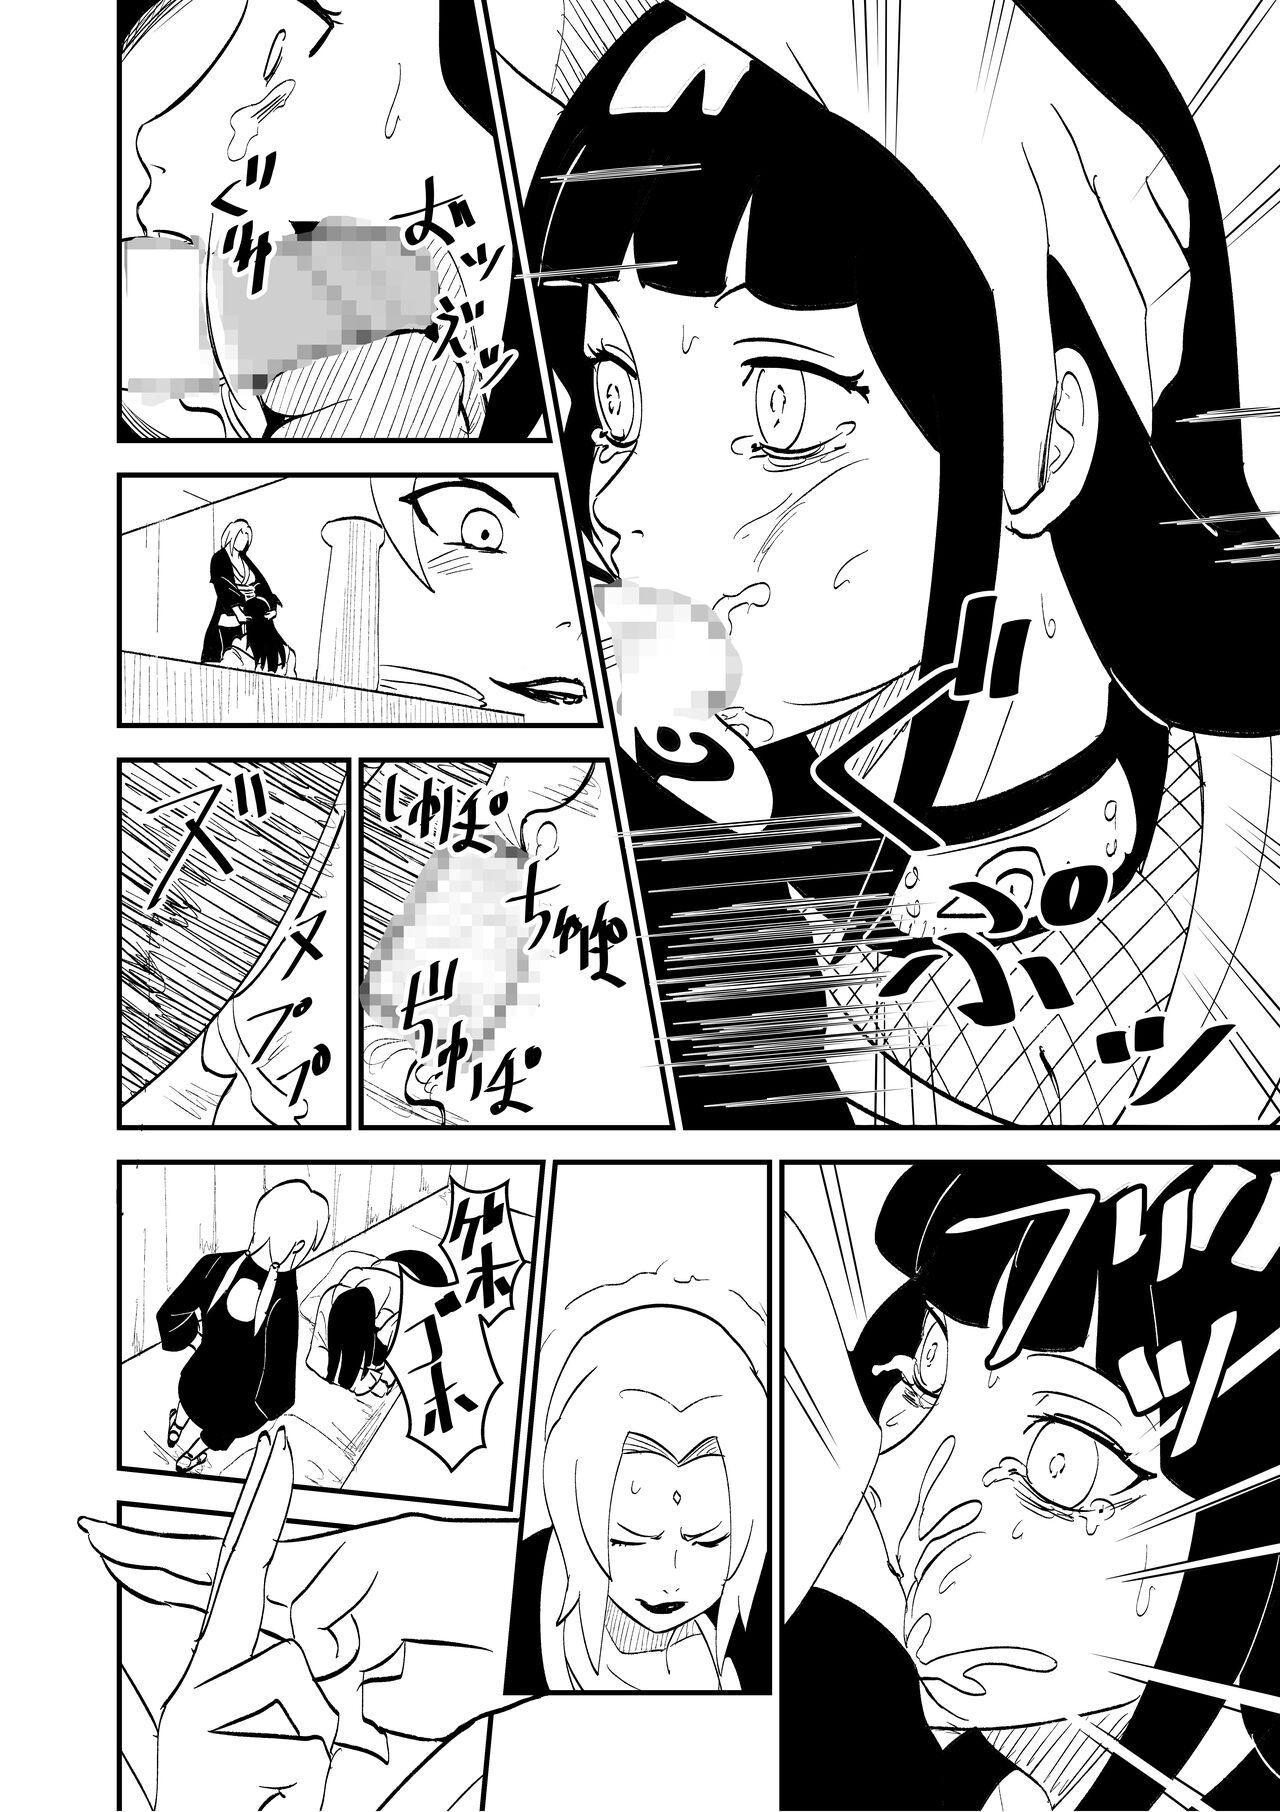 Amateur Mugen Tsukiyomi Series Onagokai 1 Tsunade Hyuuga Hinata - Naruto Hot Women Fucking - Page 2